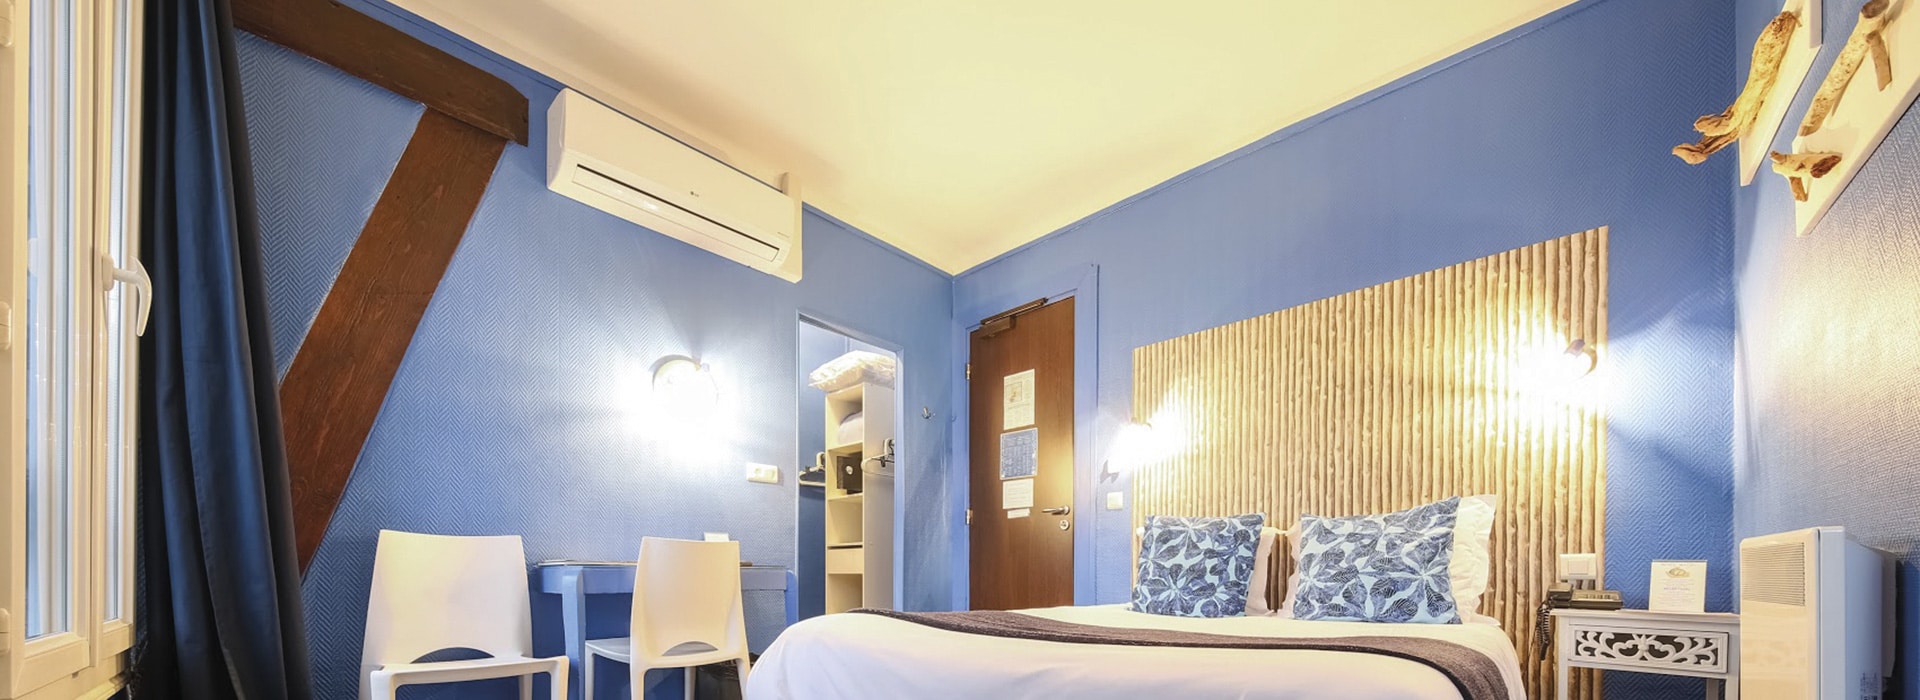 hotel-azur-chambre5